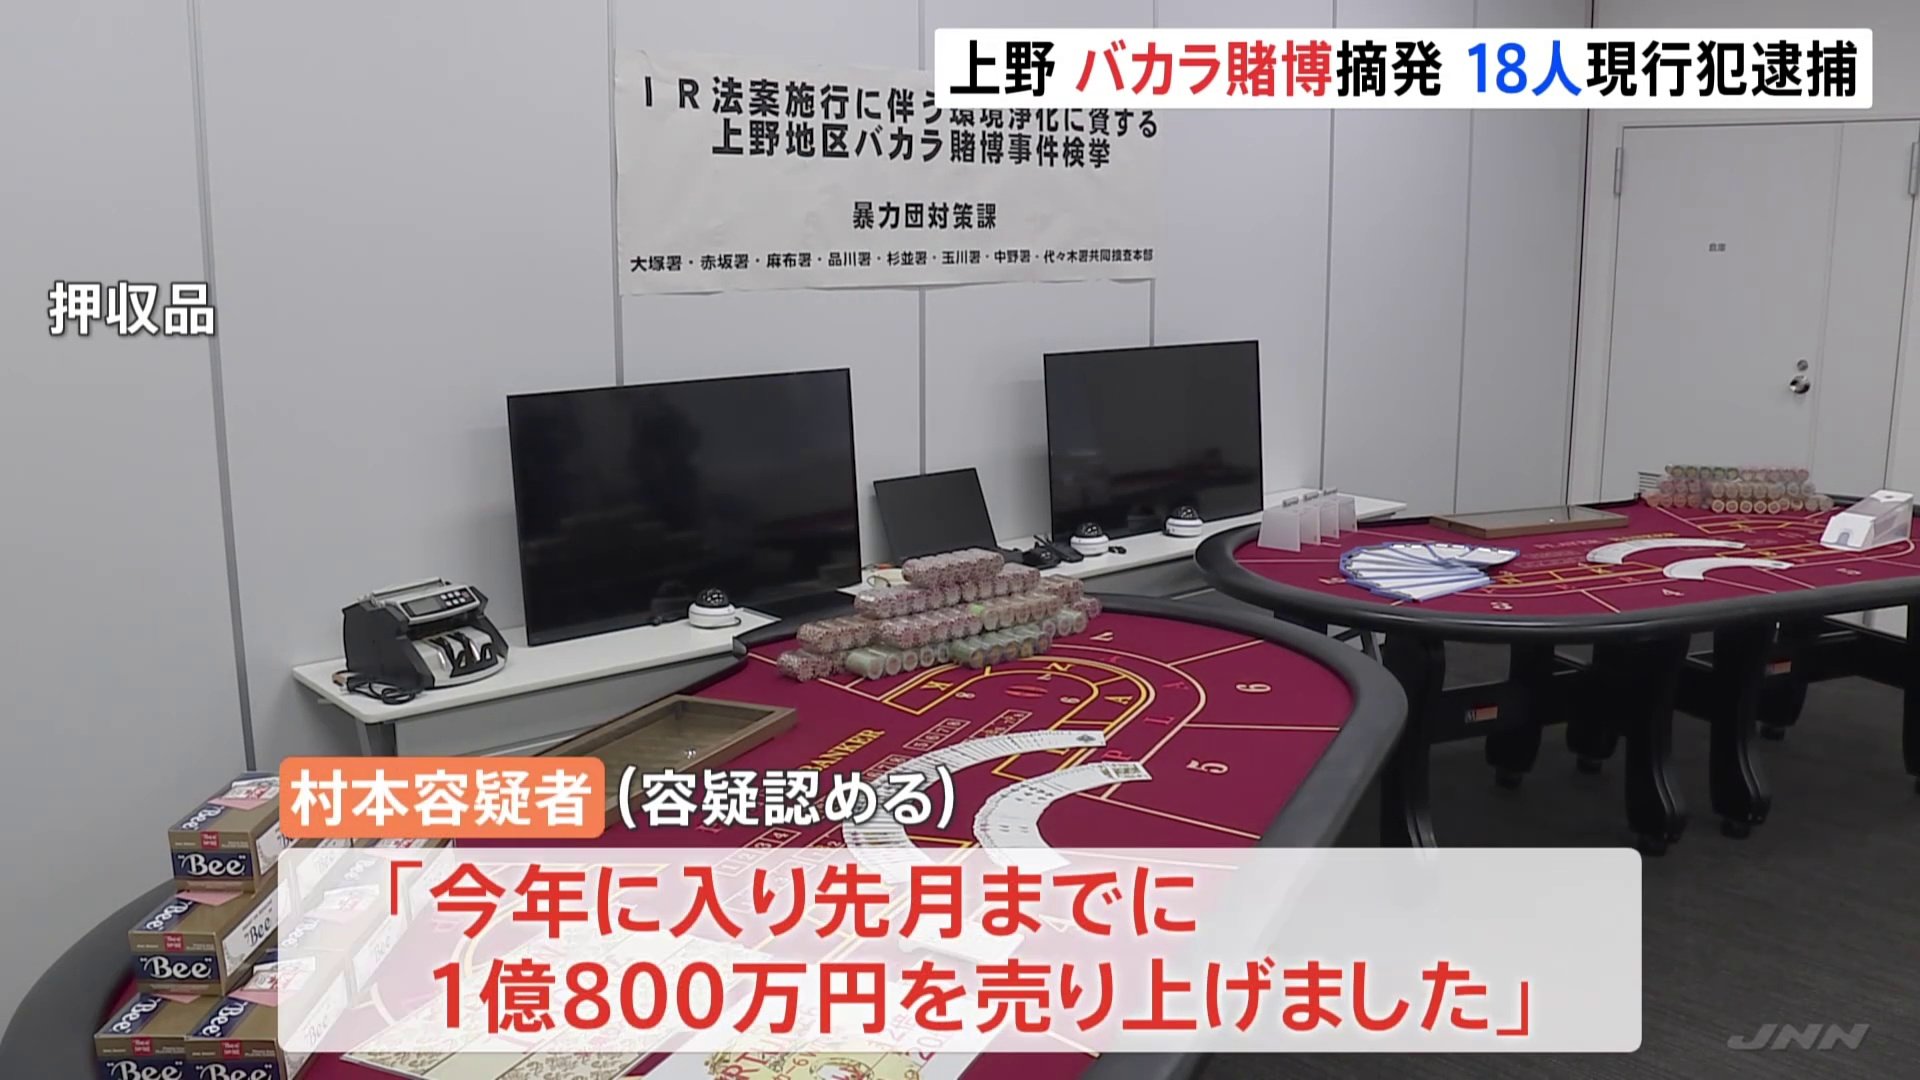 1億800万円を売り上げました」 上野の違法カジノ店を摘発 店長や客18人逮捕 | TBS NEWS DIG